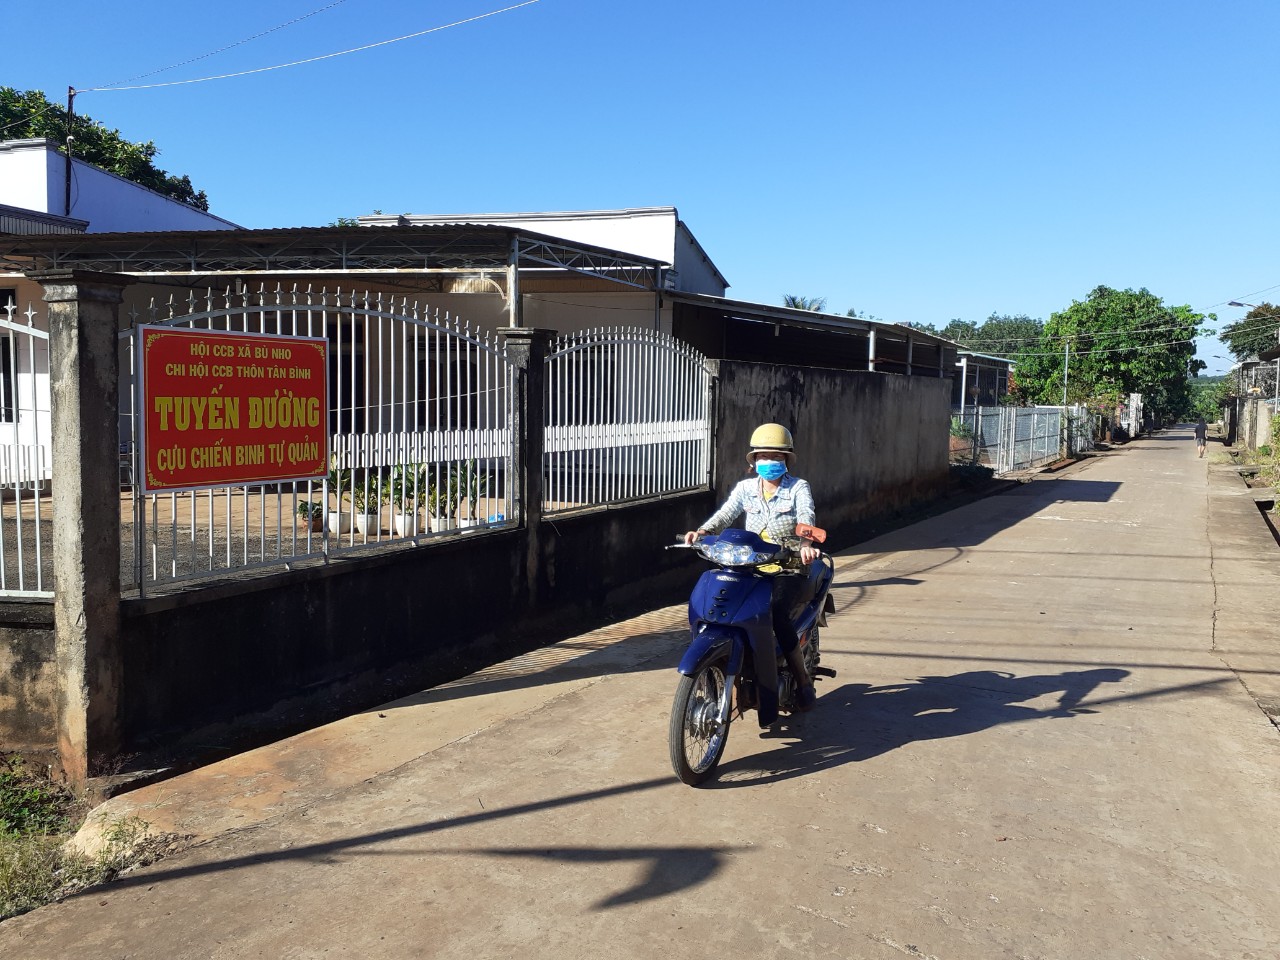 Tuyến đường Cựu chiến binh tự quản thôn Tân Bình, xã Bù Nho.